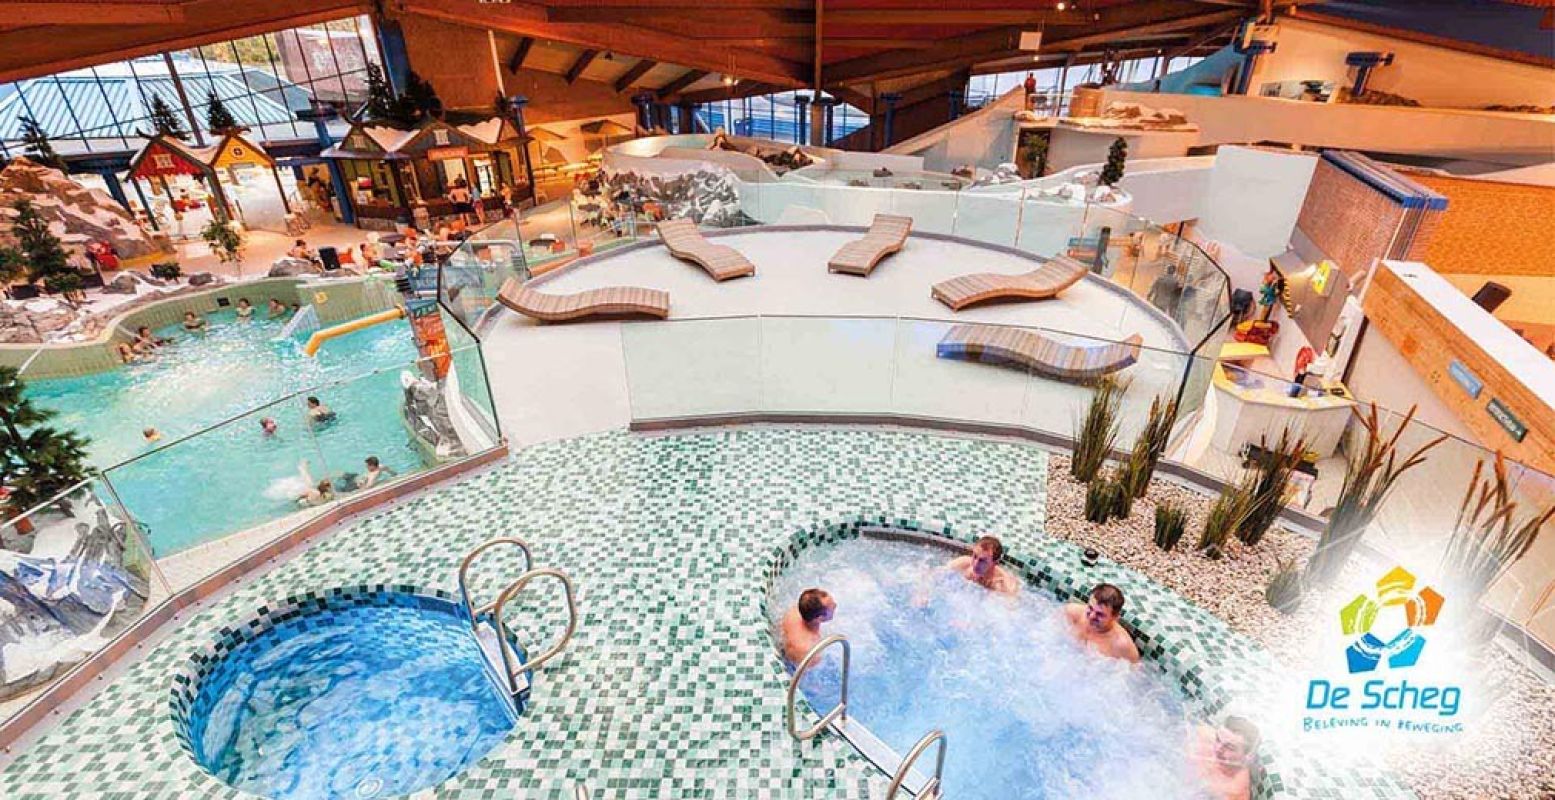 In zwemparadijs De Scheg heb je ook een wellness gedeelte met kruidenbaden en sauna's. Foto: De Scheg.